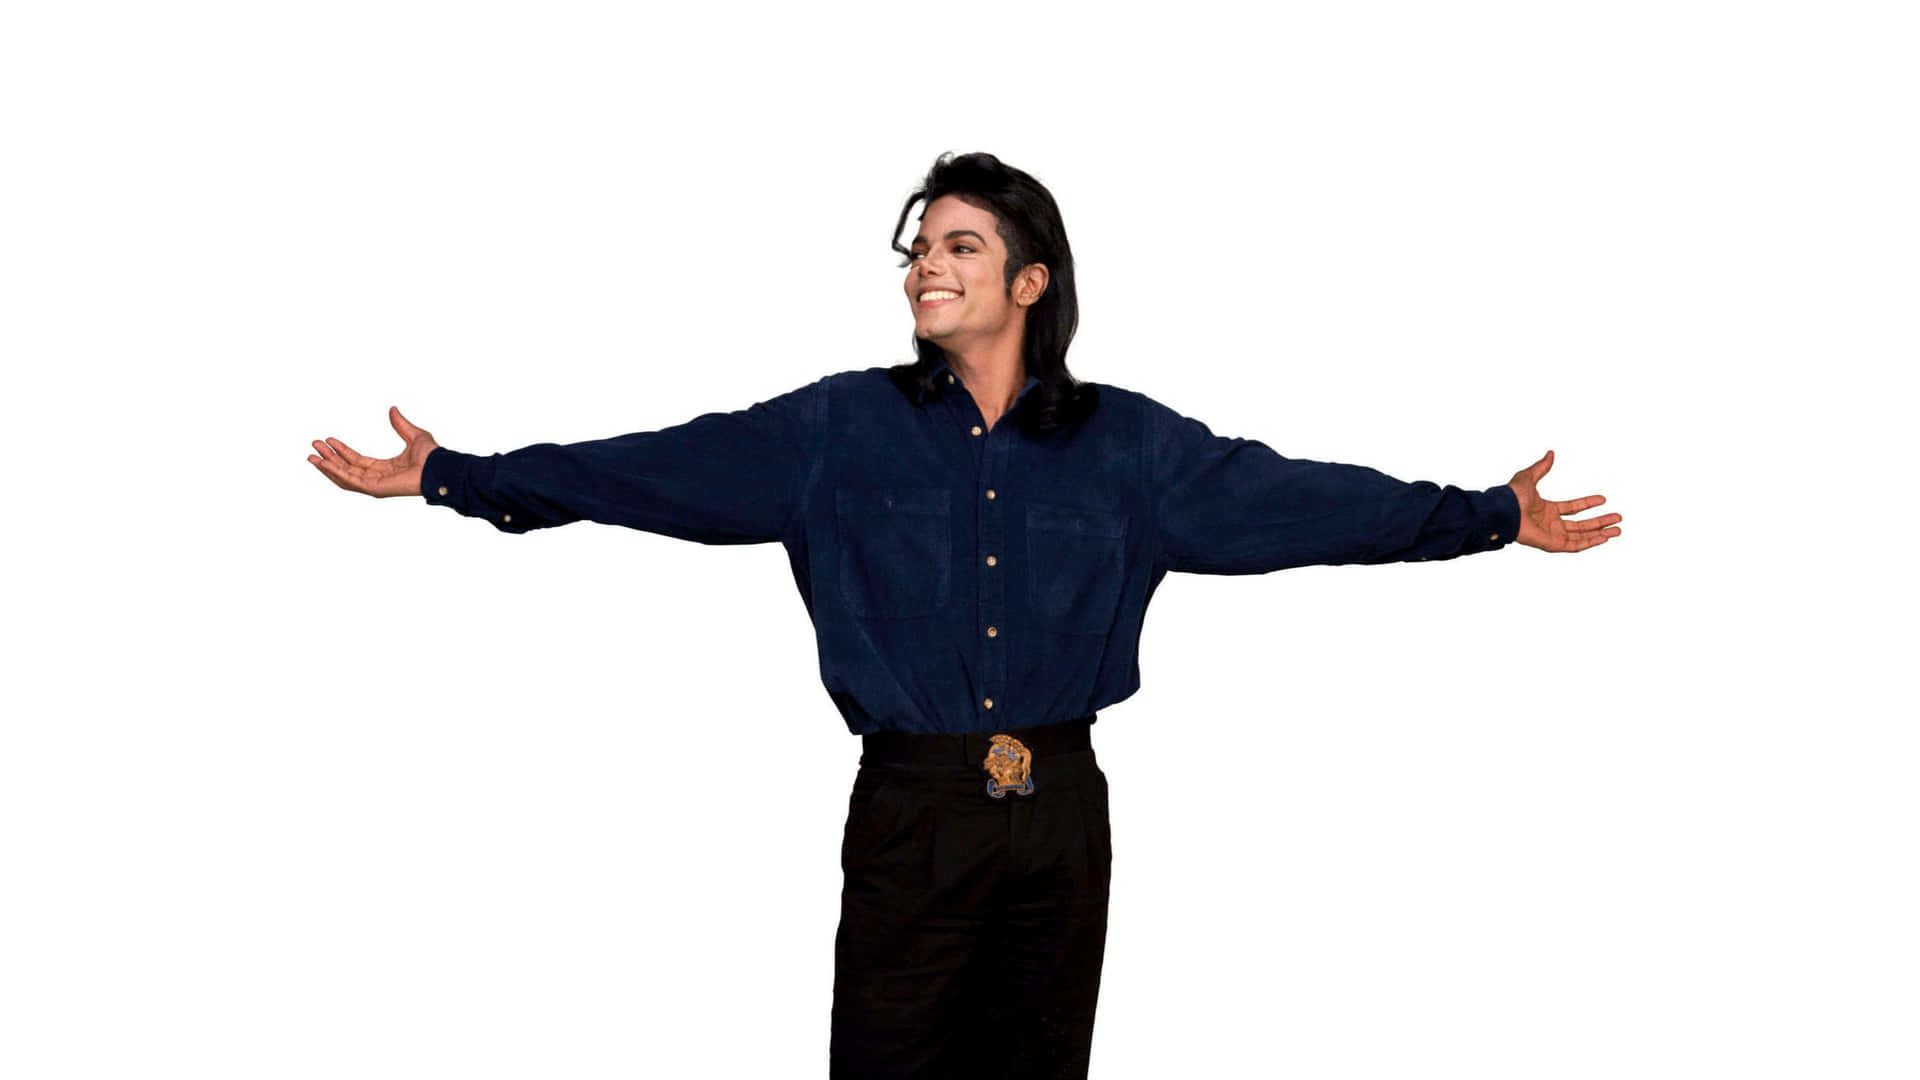 Hintergrundvon Michael Jackson In Der Größe Von 3840 X 2160